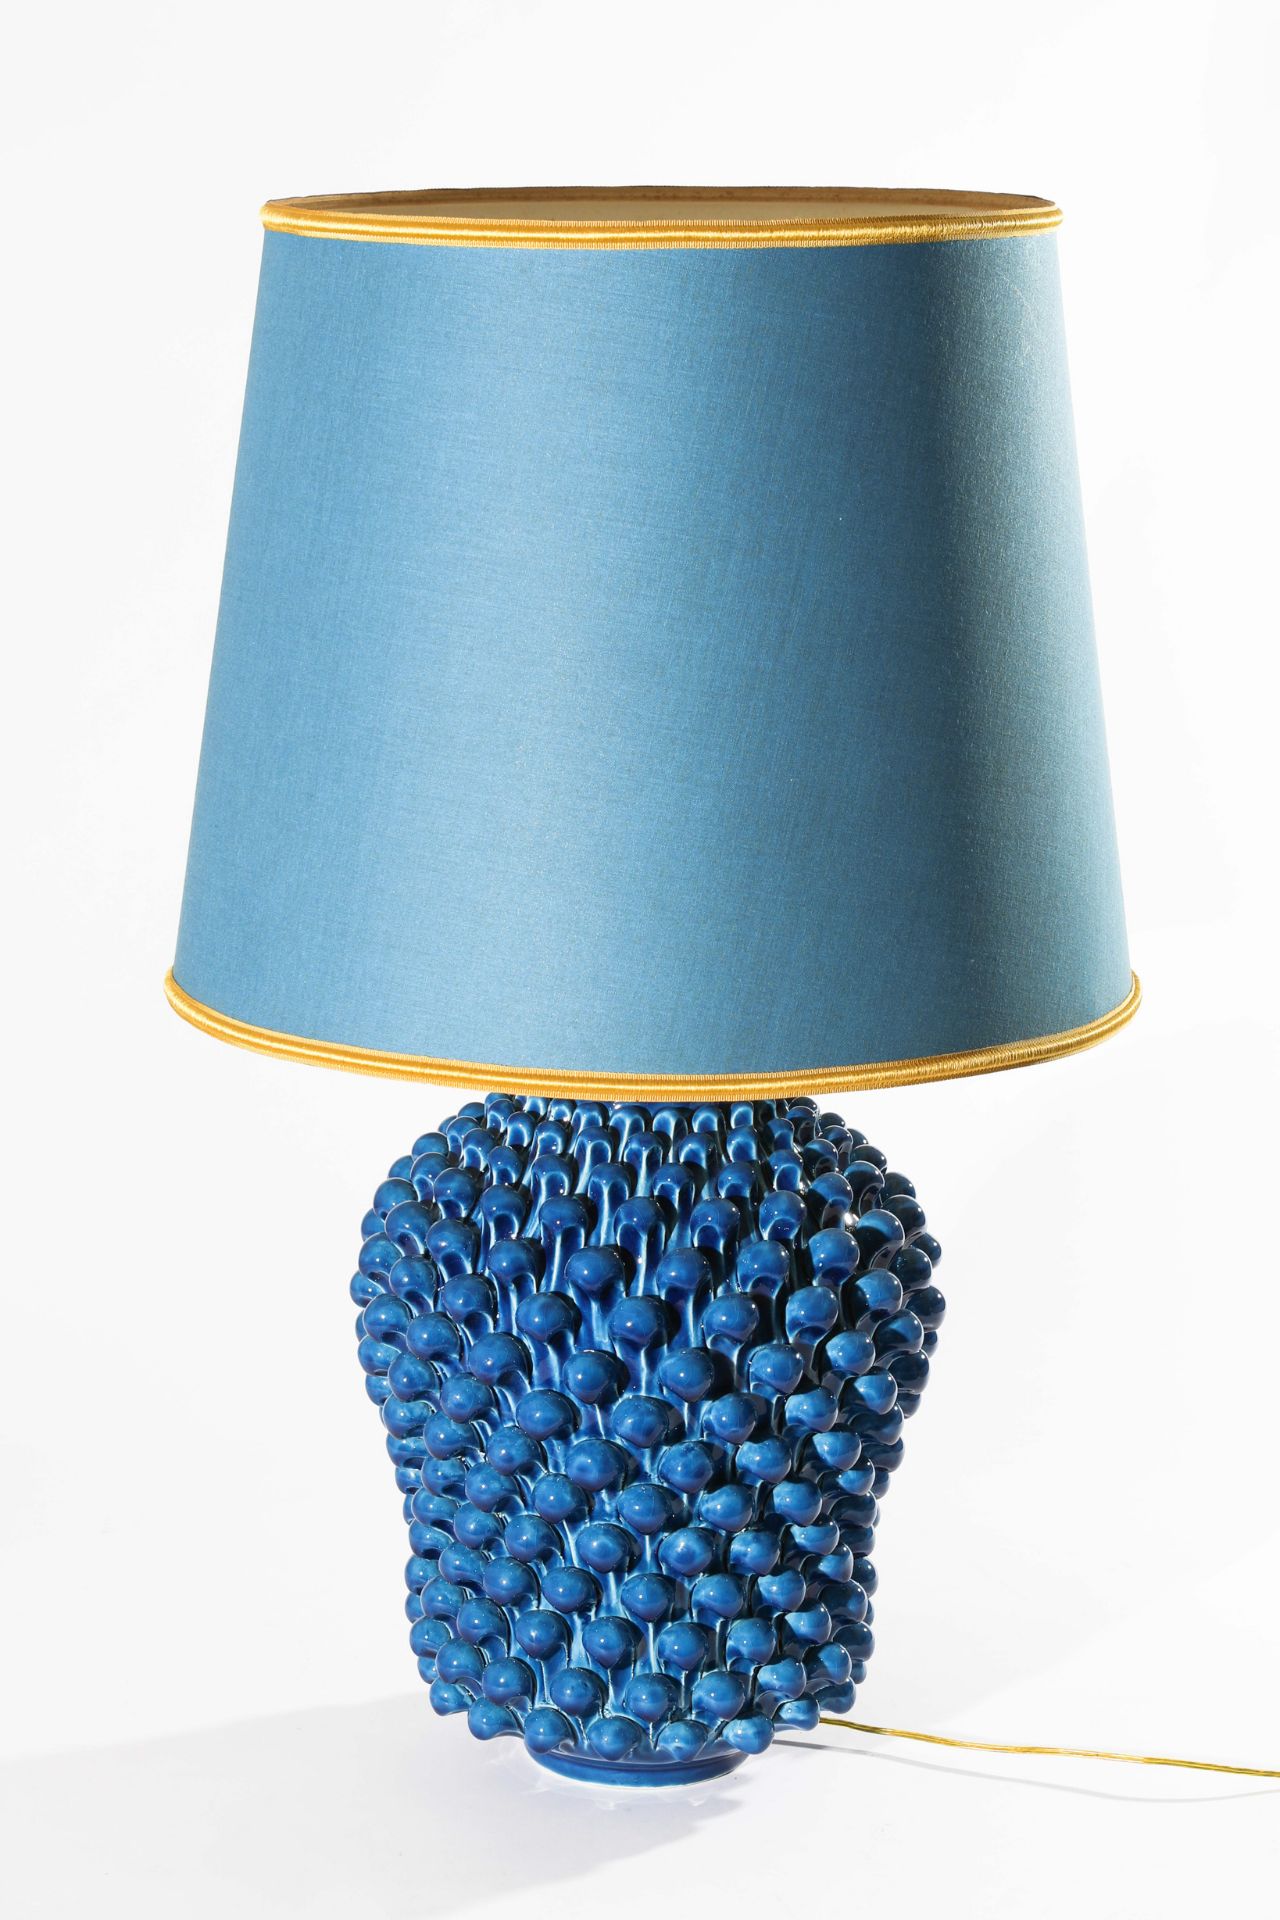 Ceramica del Ferlaro, Table Lamp 1950/60s - Image 2 of 5